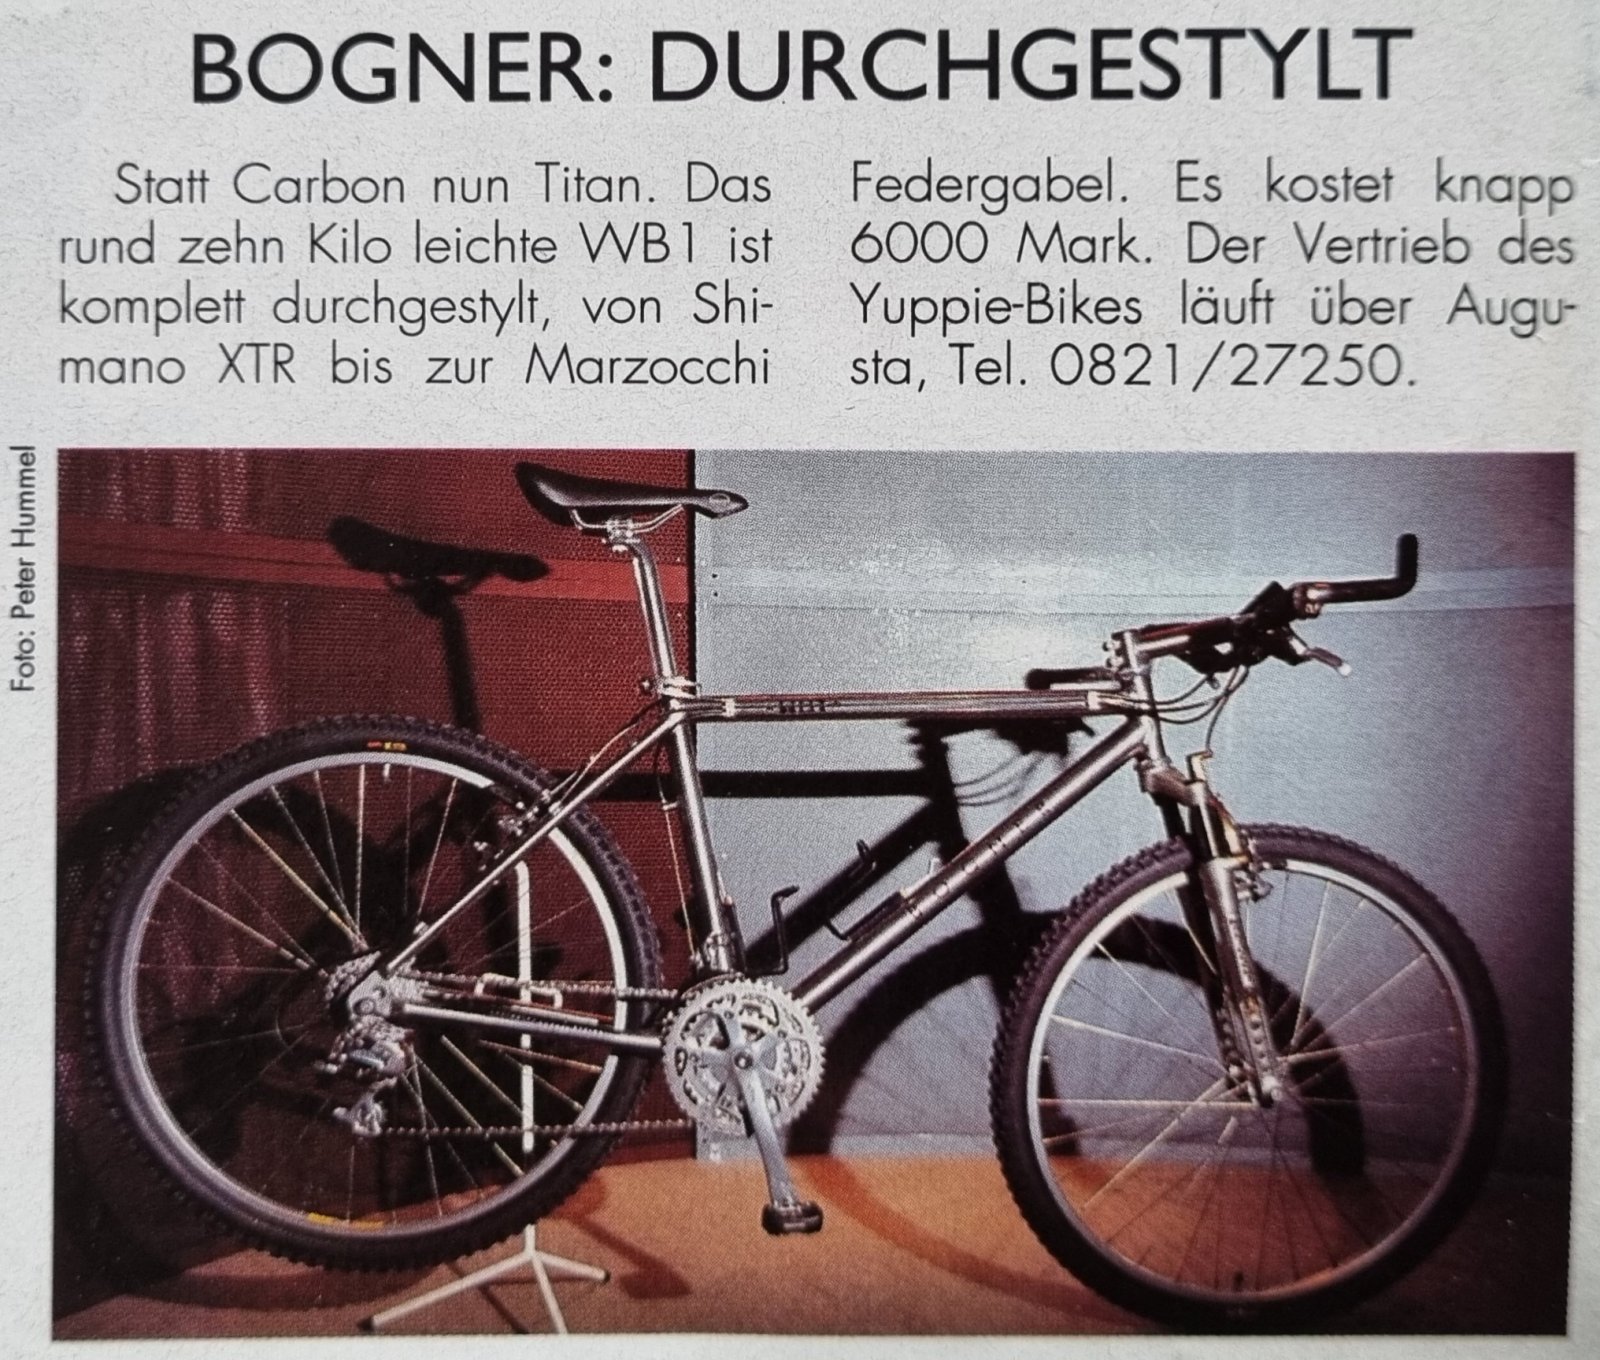 Bogner Titan Vorstellung EuroBike aus Bike 10 1993.jpg